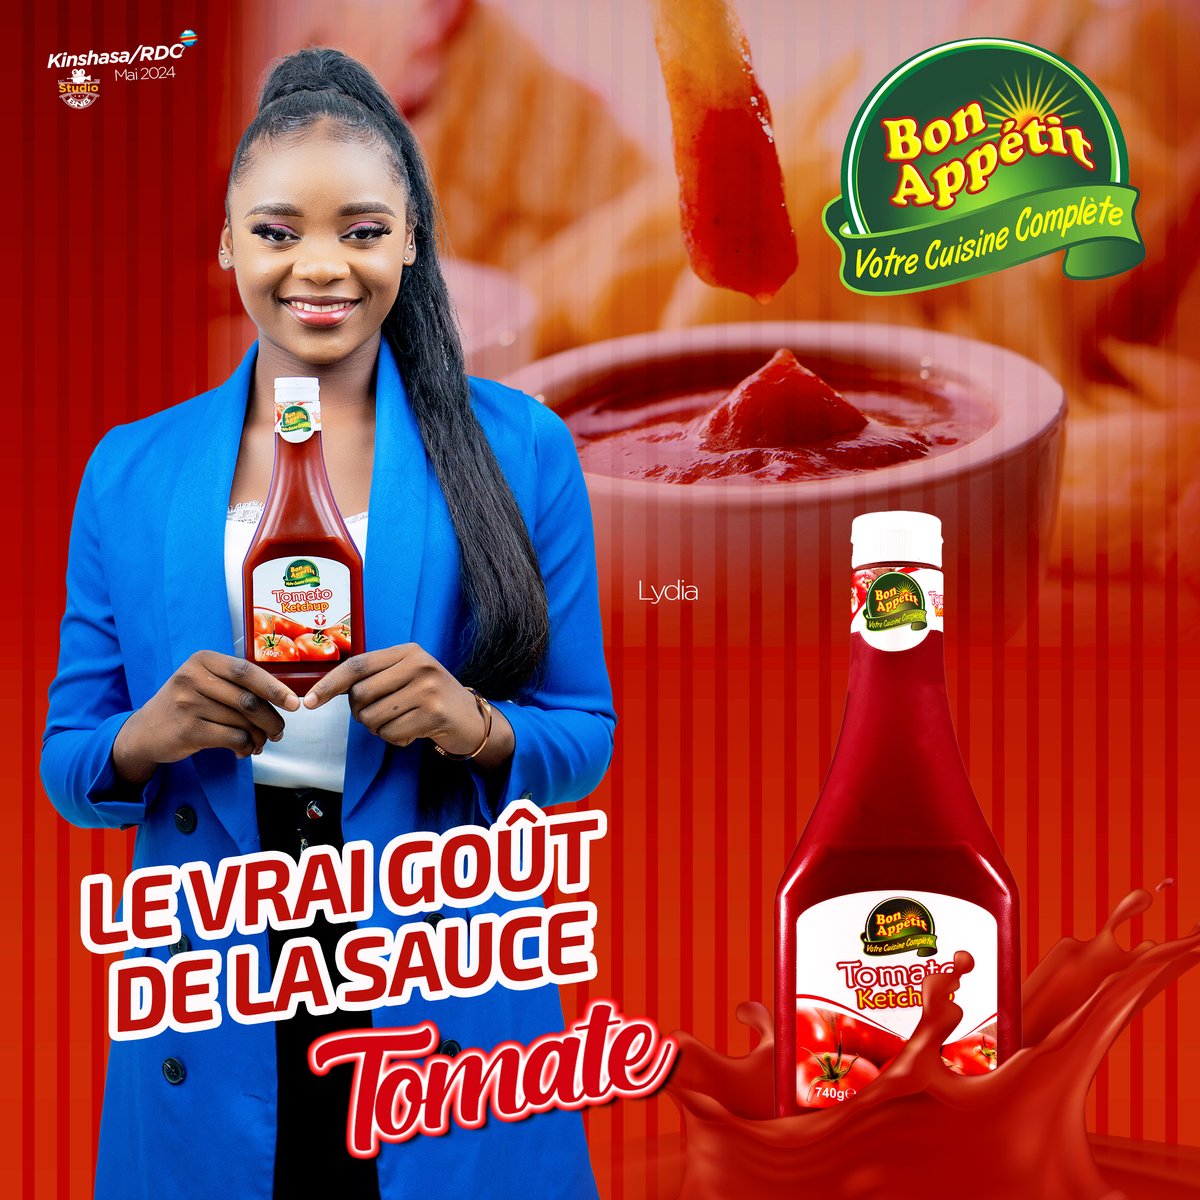 Découvrez une explosion de saveurs avec le ketchup Bon Appétit, et laissez-vous emportez son goût authentique et irrésistible.

Le ketchup Bon Appétit, le vrai goût de la sauce tomate
#BonAppetitRDC #Ketchup #Kinshasa #RDC2023 #ELSsarl #BisoNaBiso #Aquasplash #KinMarché